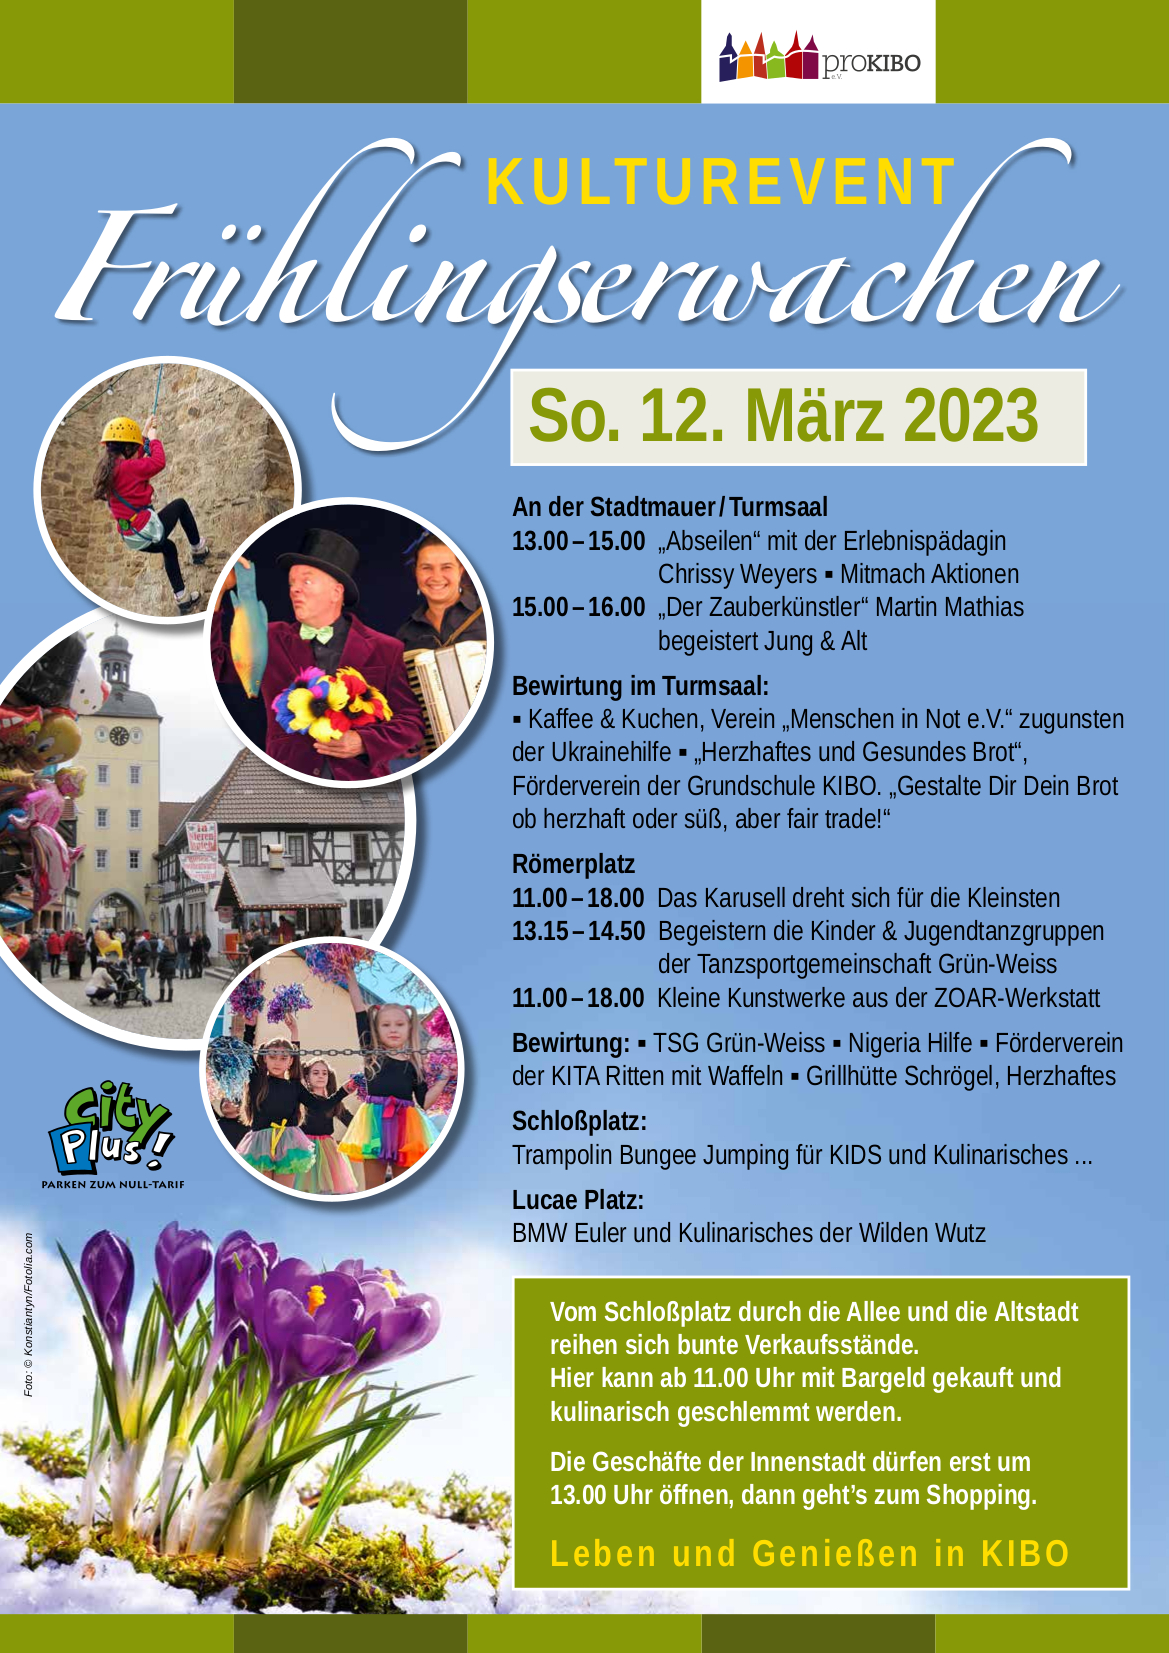 Frühlingserwachen am 12.03.2023 in Kirchheimbolanden präsentiert von proKIBO e.V.